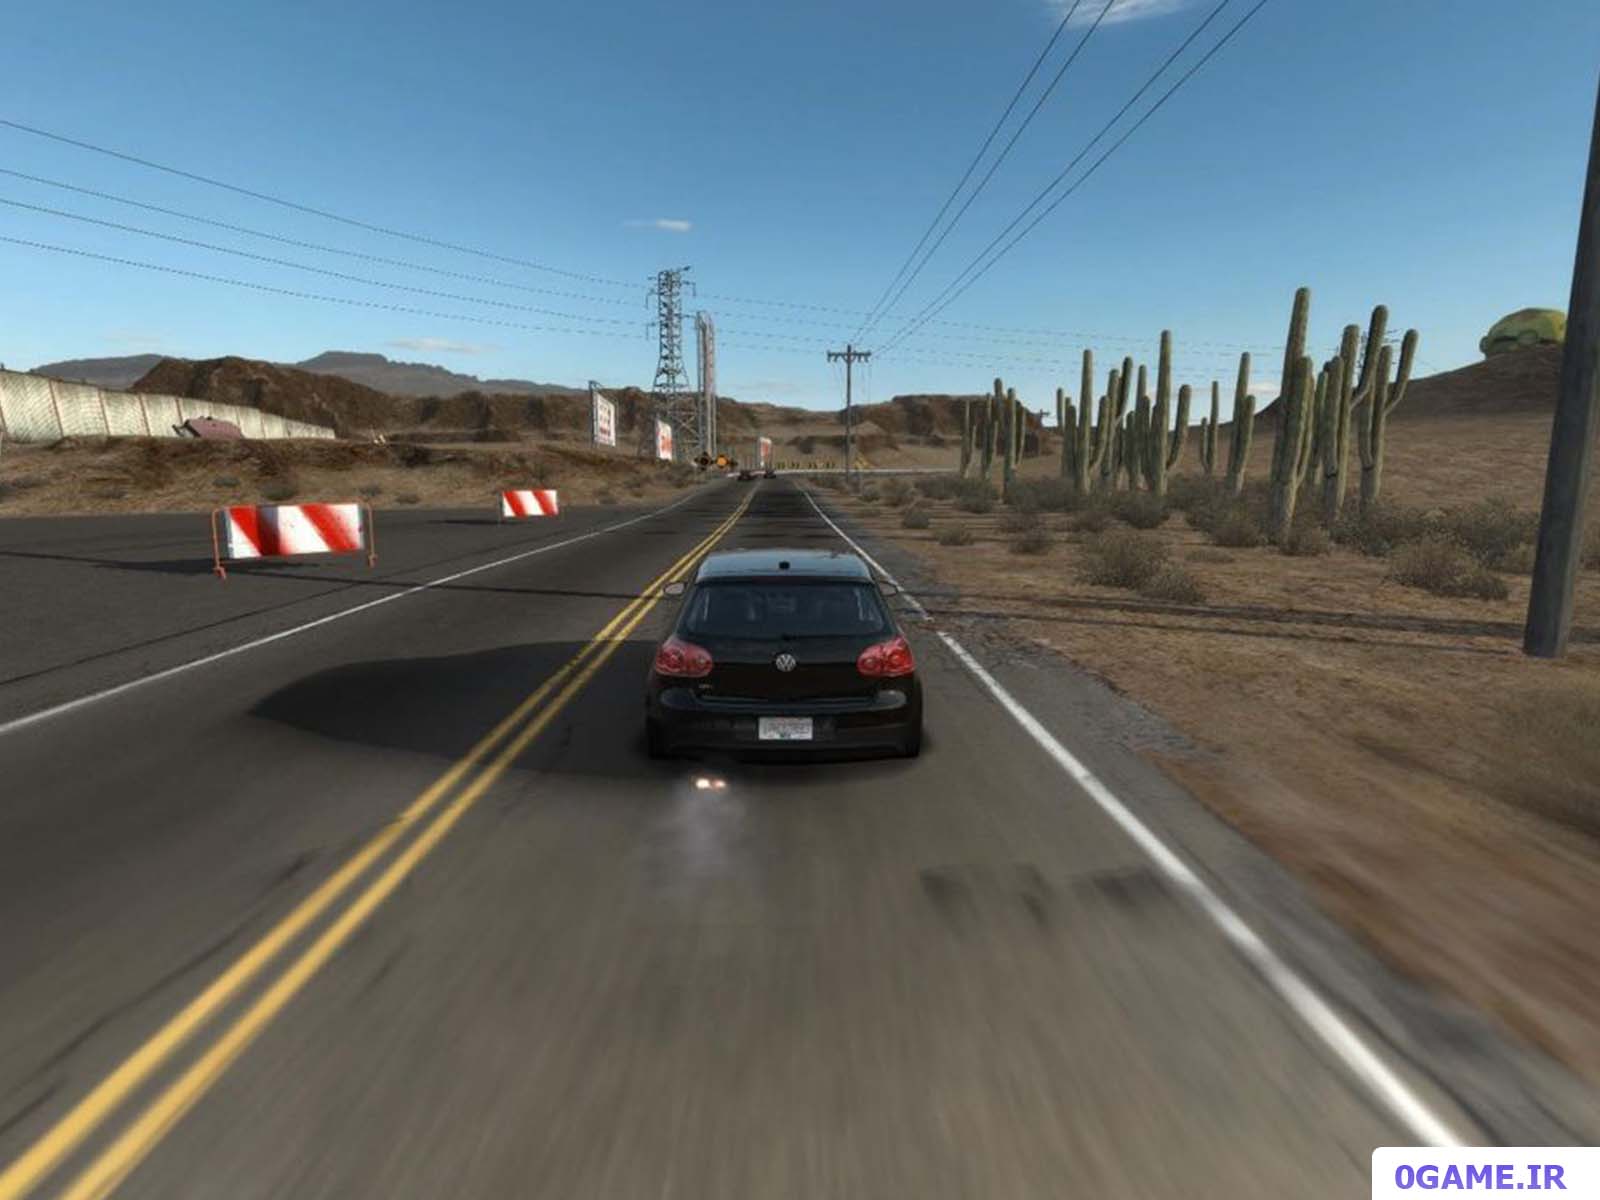 دانلود بازی نید فور اسپید پرو استریت (Need for Speed: ProStreet) نسخه کامل برای کامپیوتر